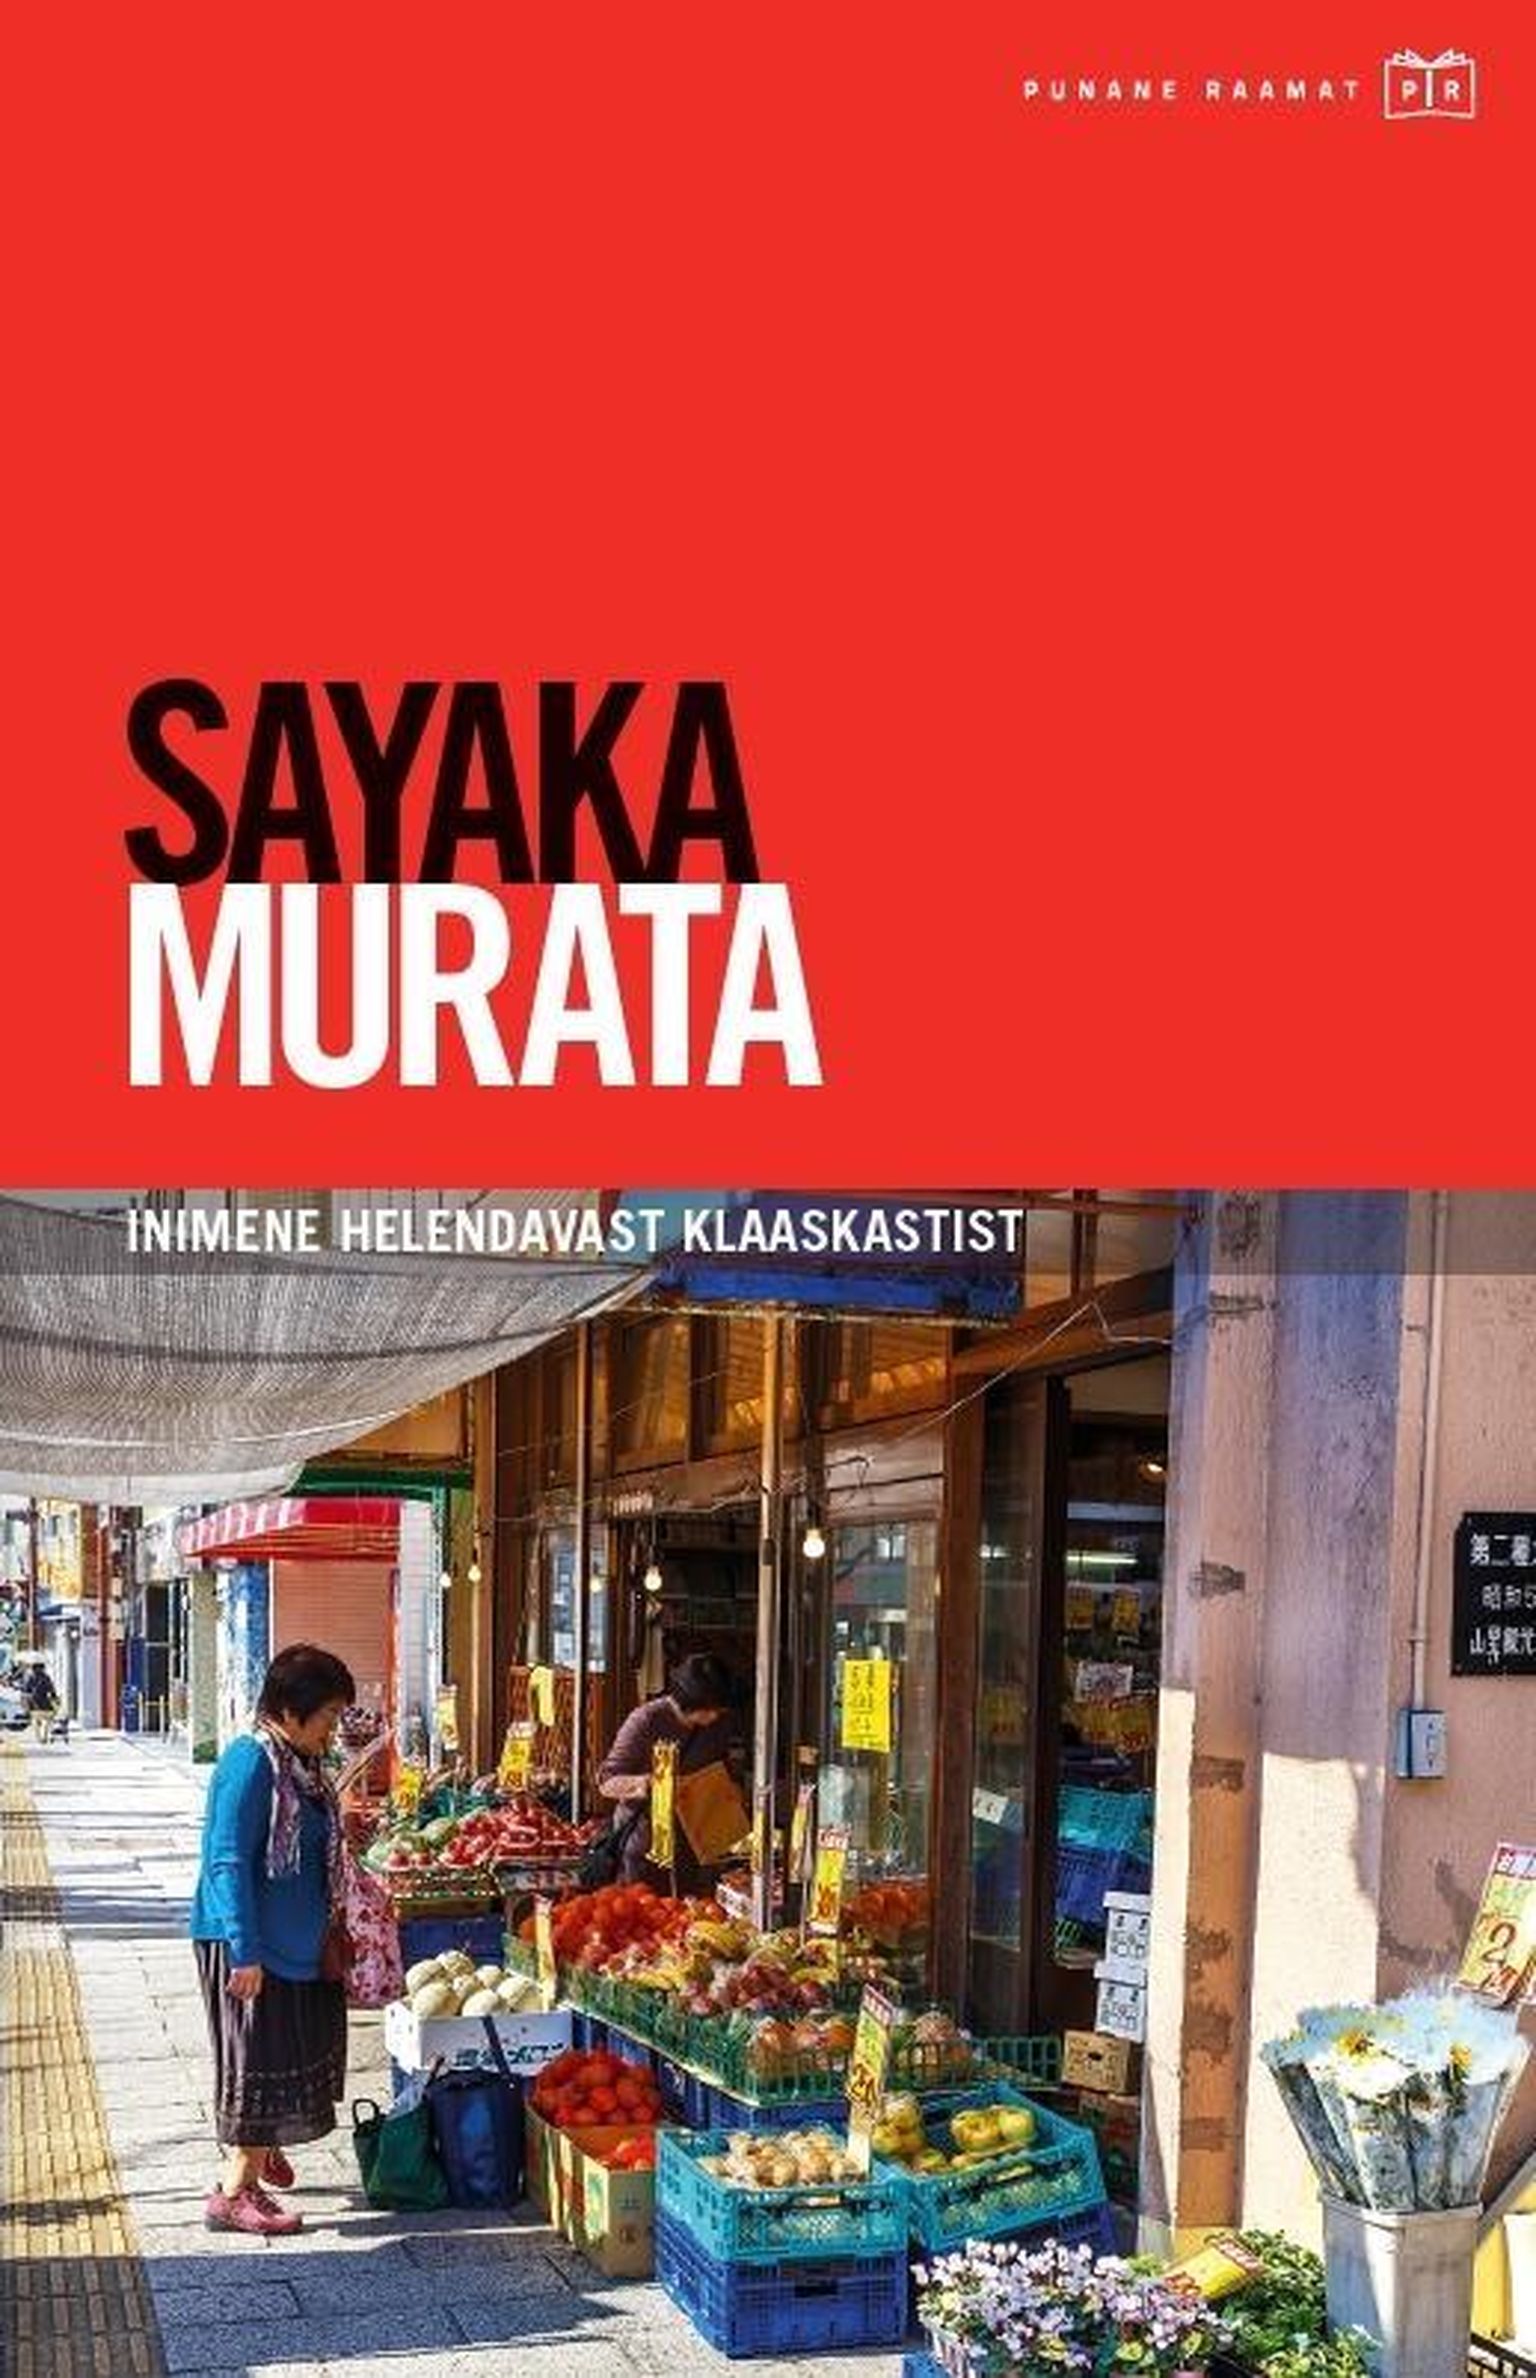 Sayaka Murata
"Inimene helendavast klaaskastist"
Tänapäev 2021